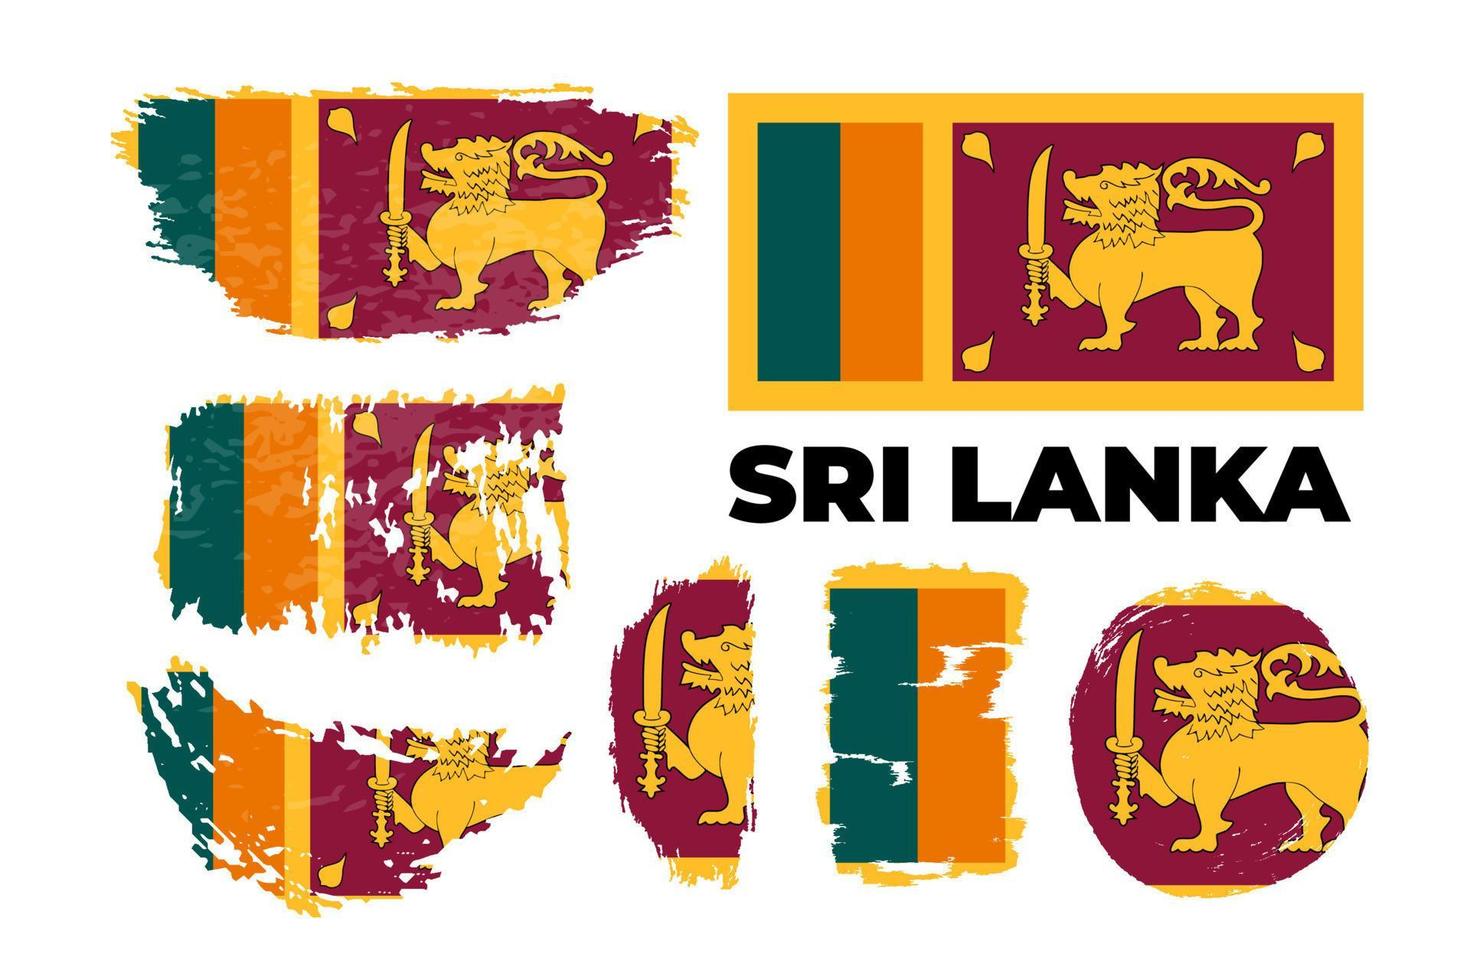 bandeira nacional do sri lanka, cores oficiais e proporção corretamente. ilustração em vetor estoque definido na pincelada de estilo grunge. eps10. ícone, design simples e plano para web ou aplicativo móvel.